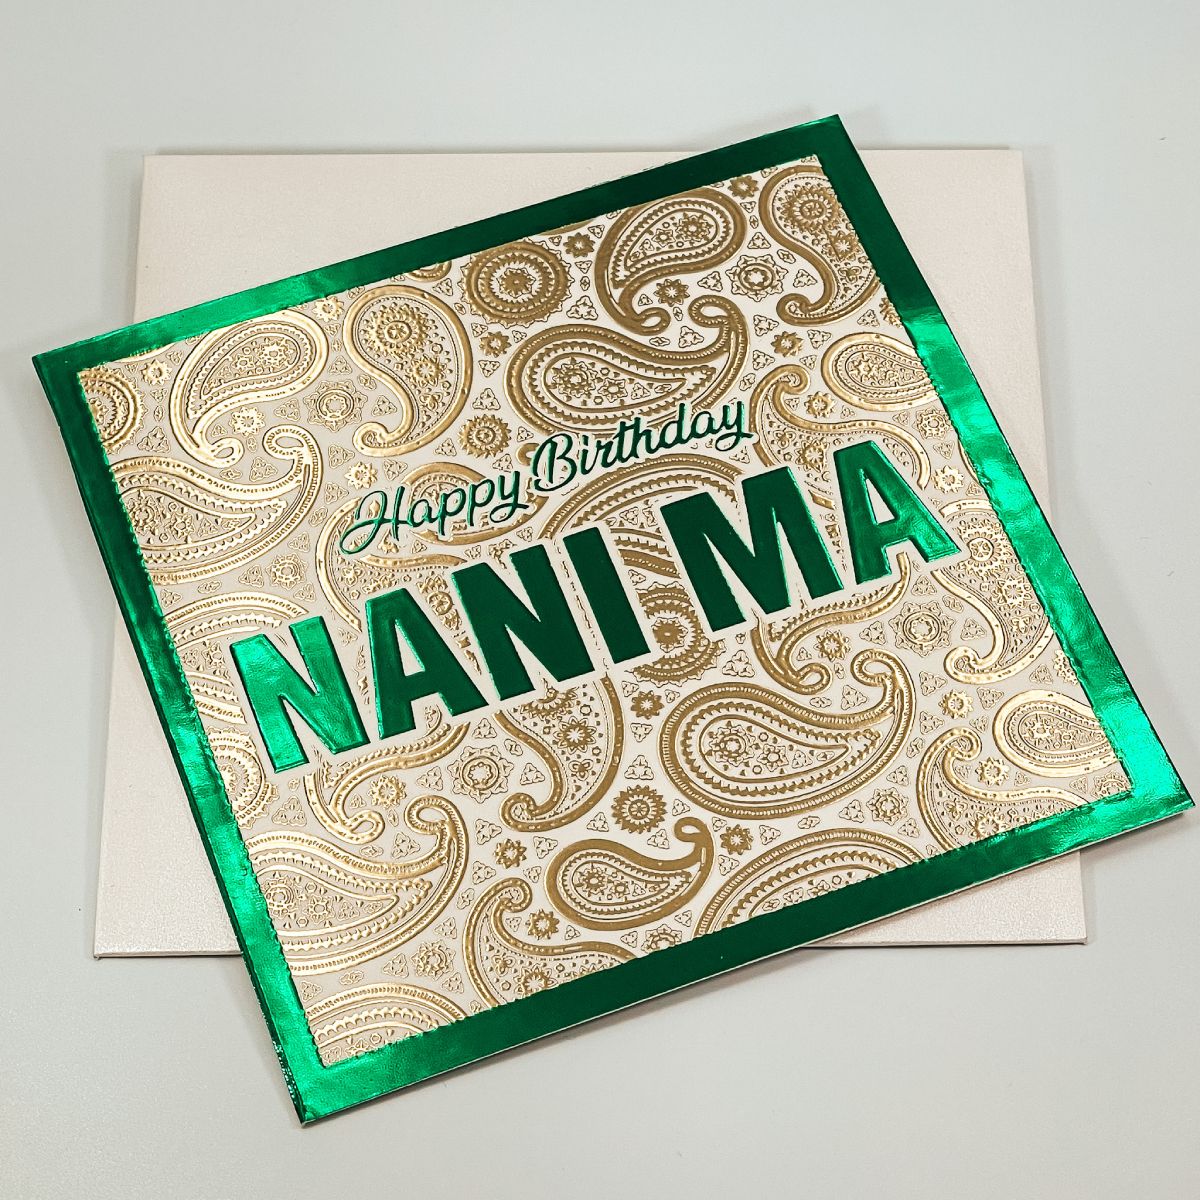 Happy Birthday Nani Ma